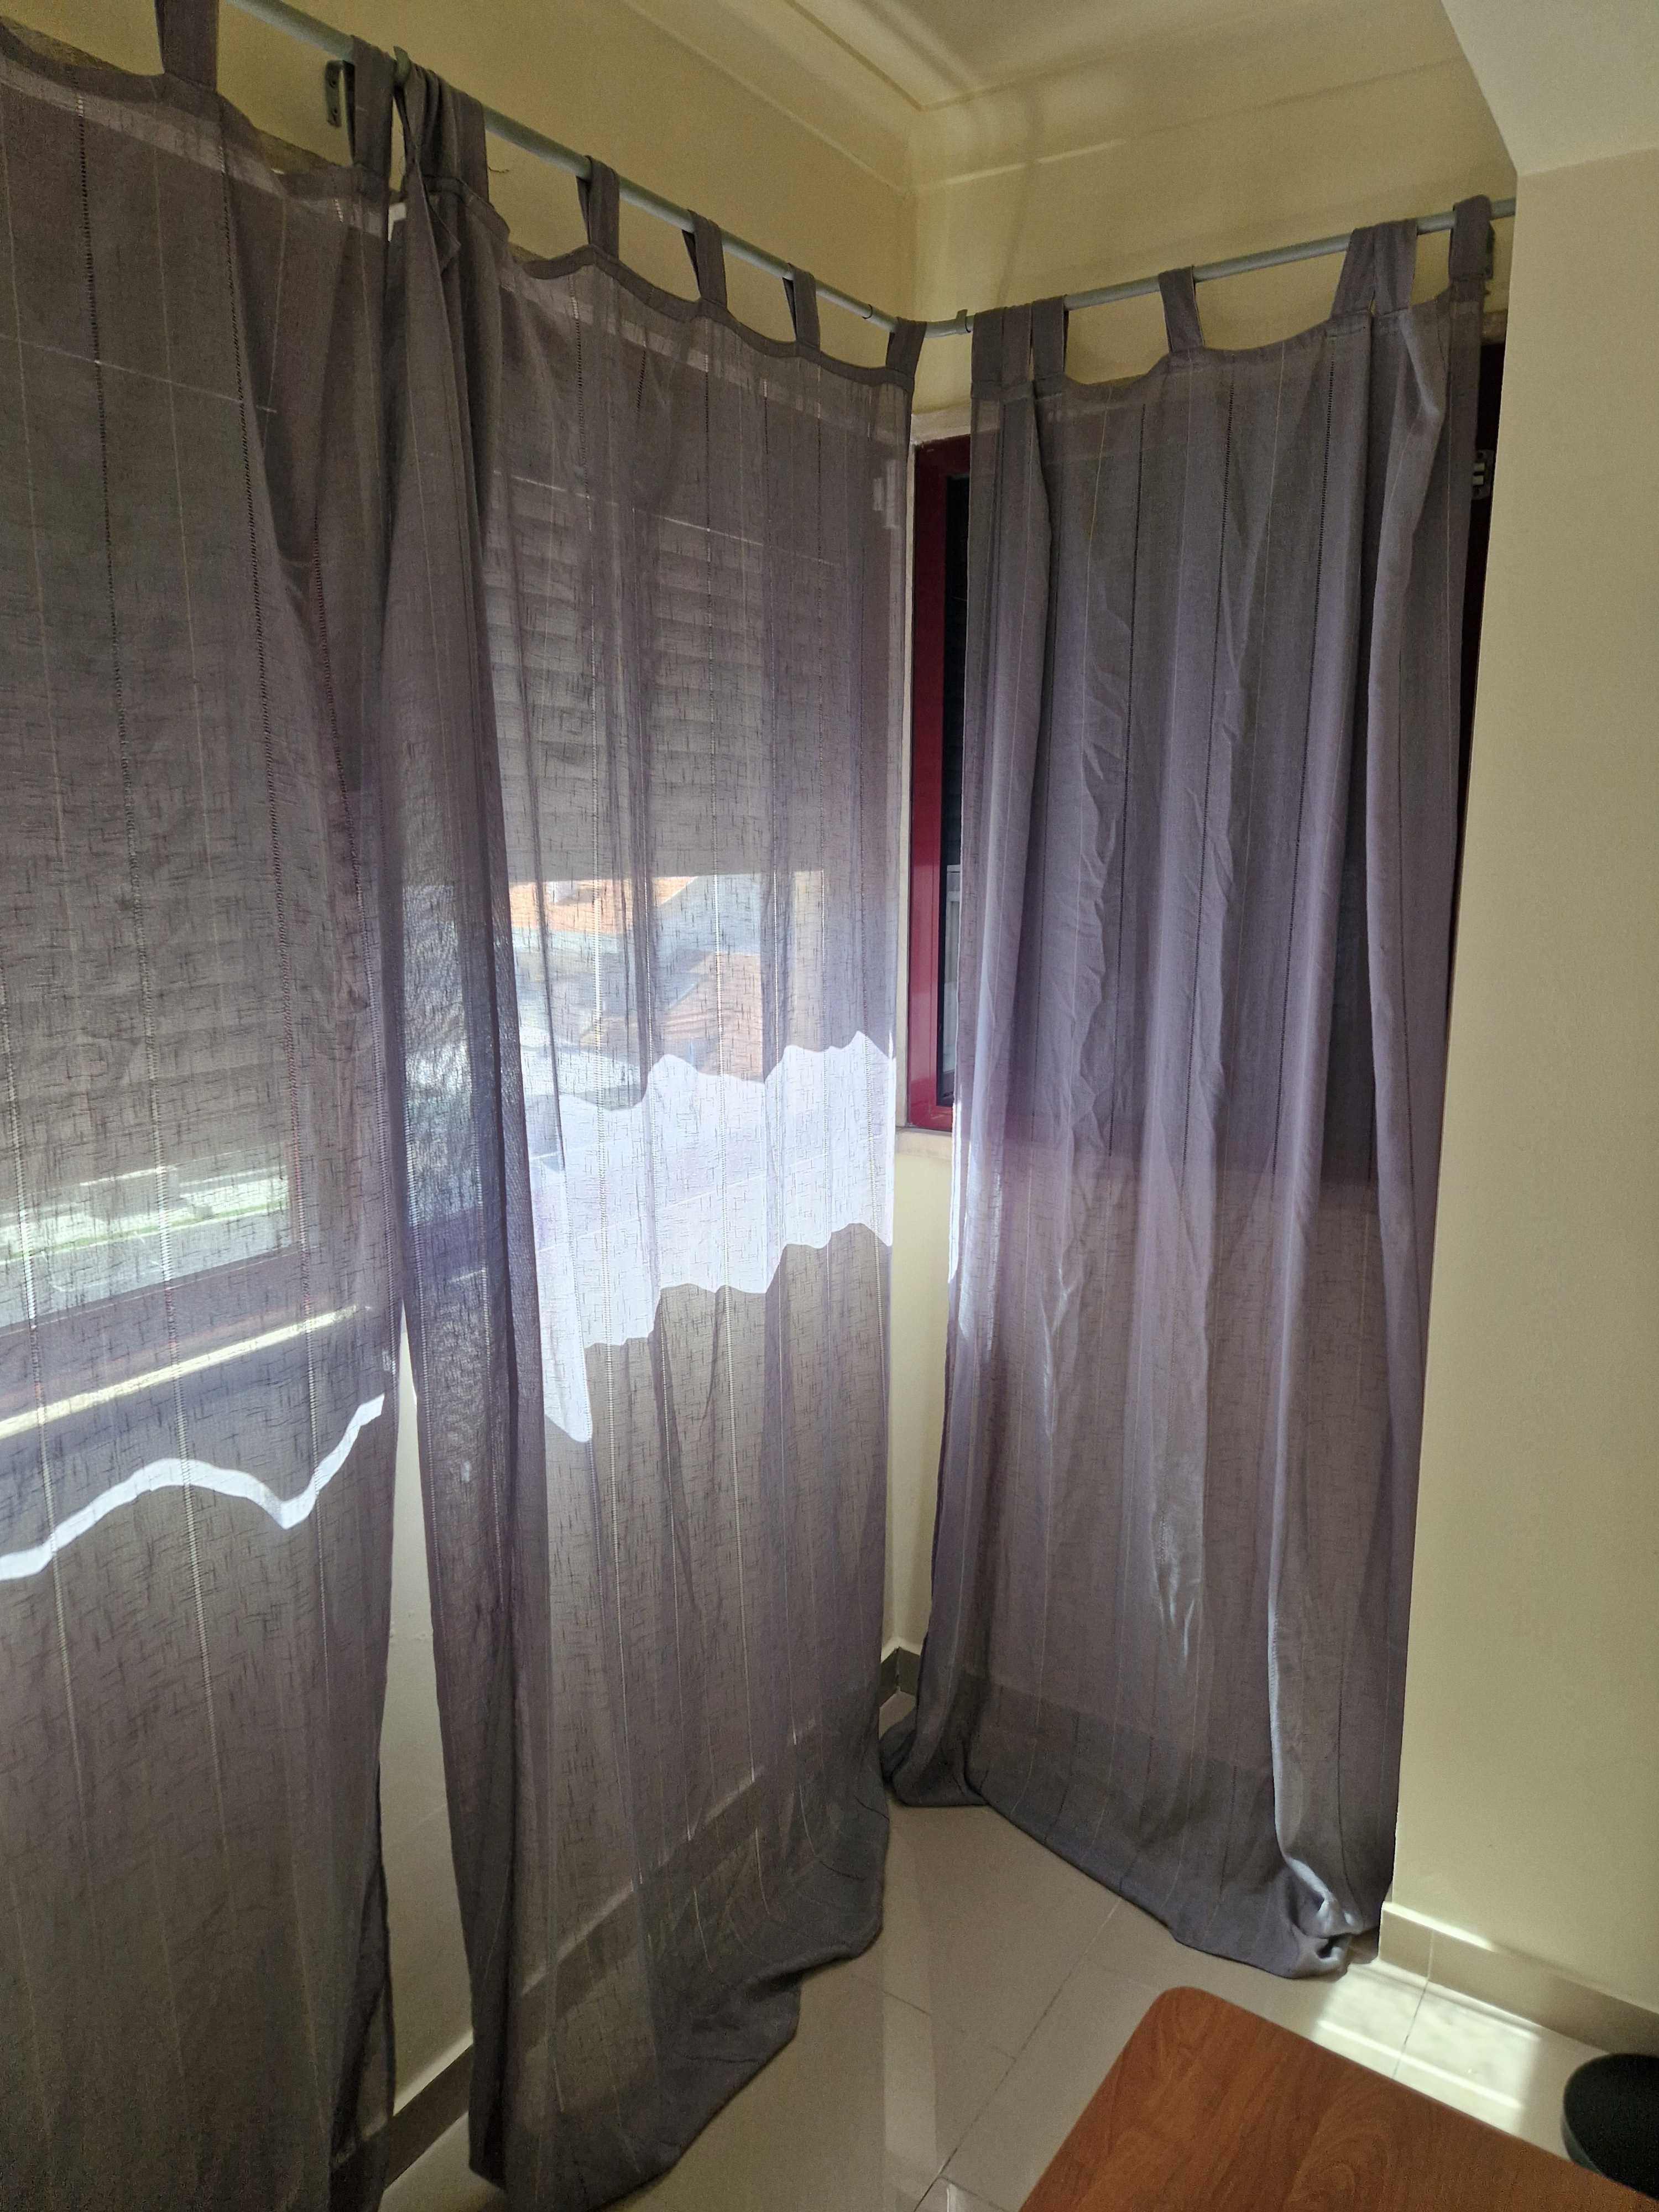 Cortinados e cortinas usadas